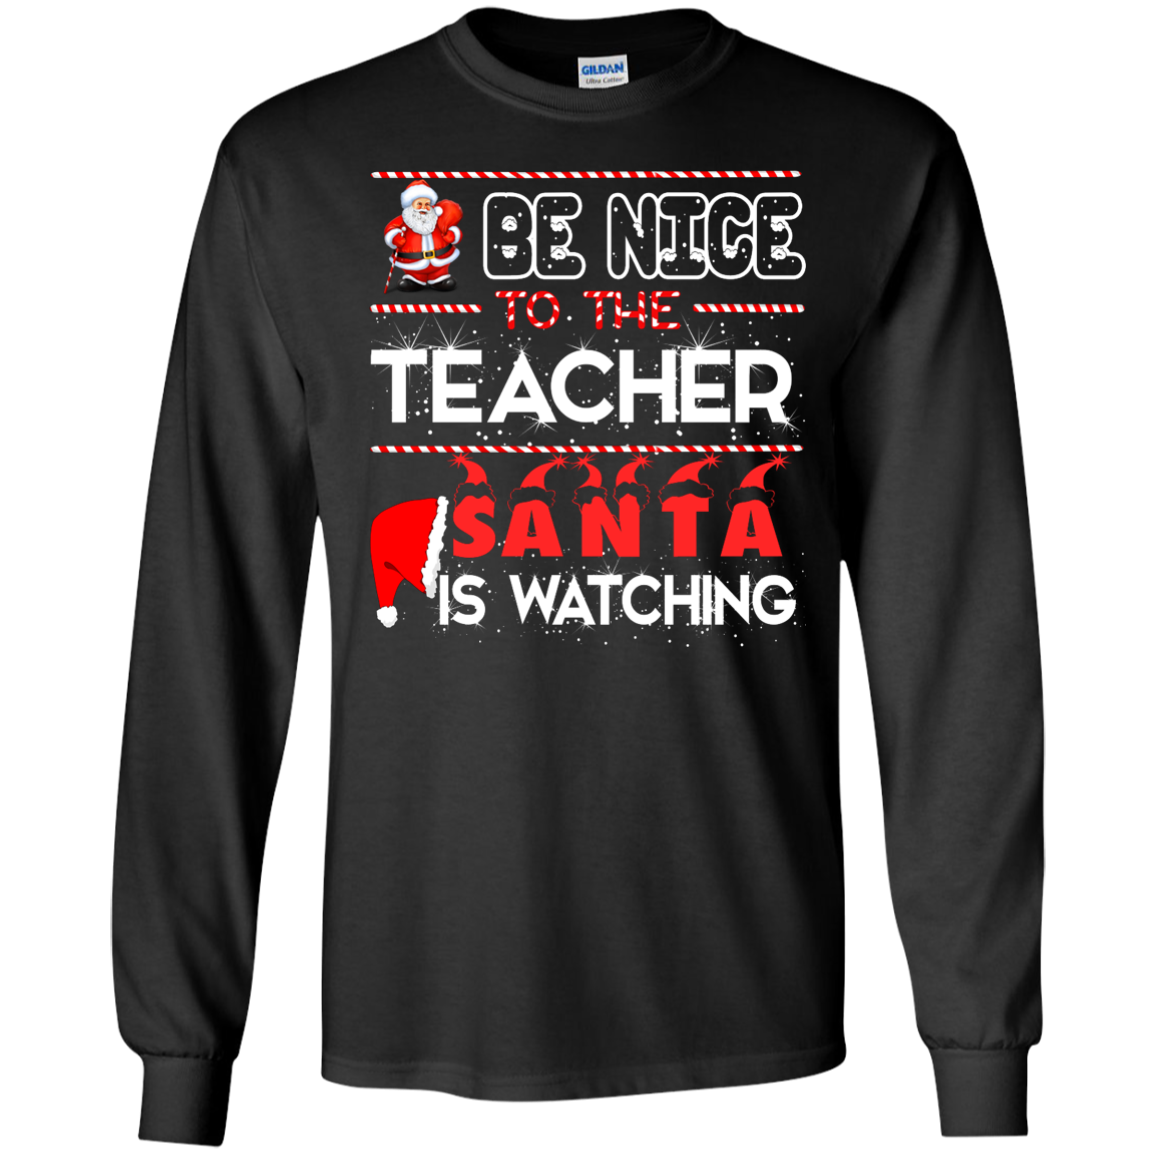 Be Nice to the Teacher Santa is Watching Shirt, Hoodie, Tank - ifrogtees